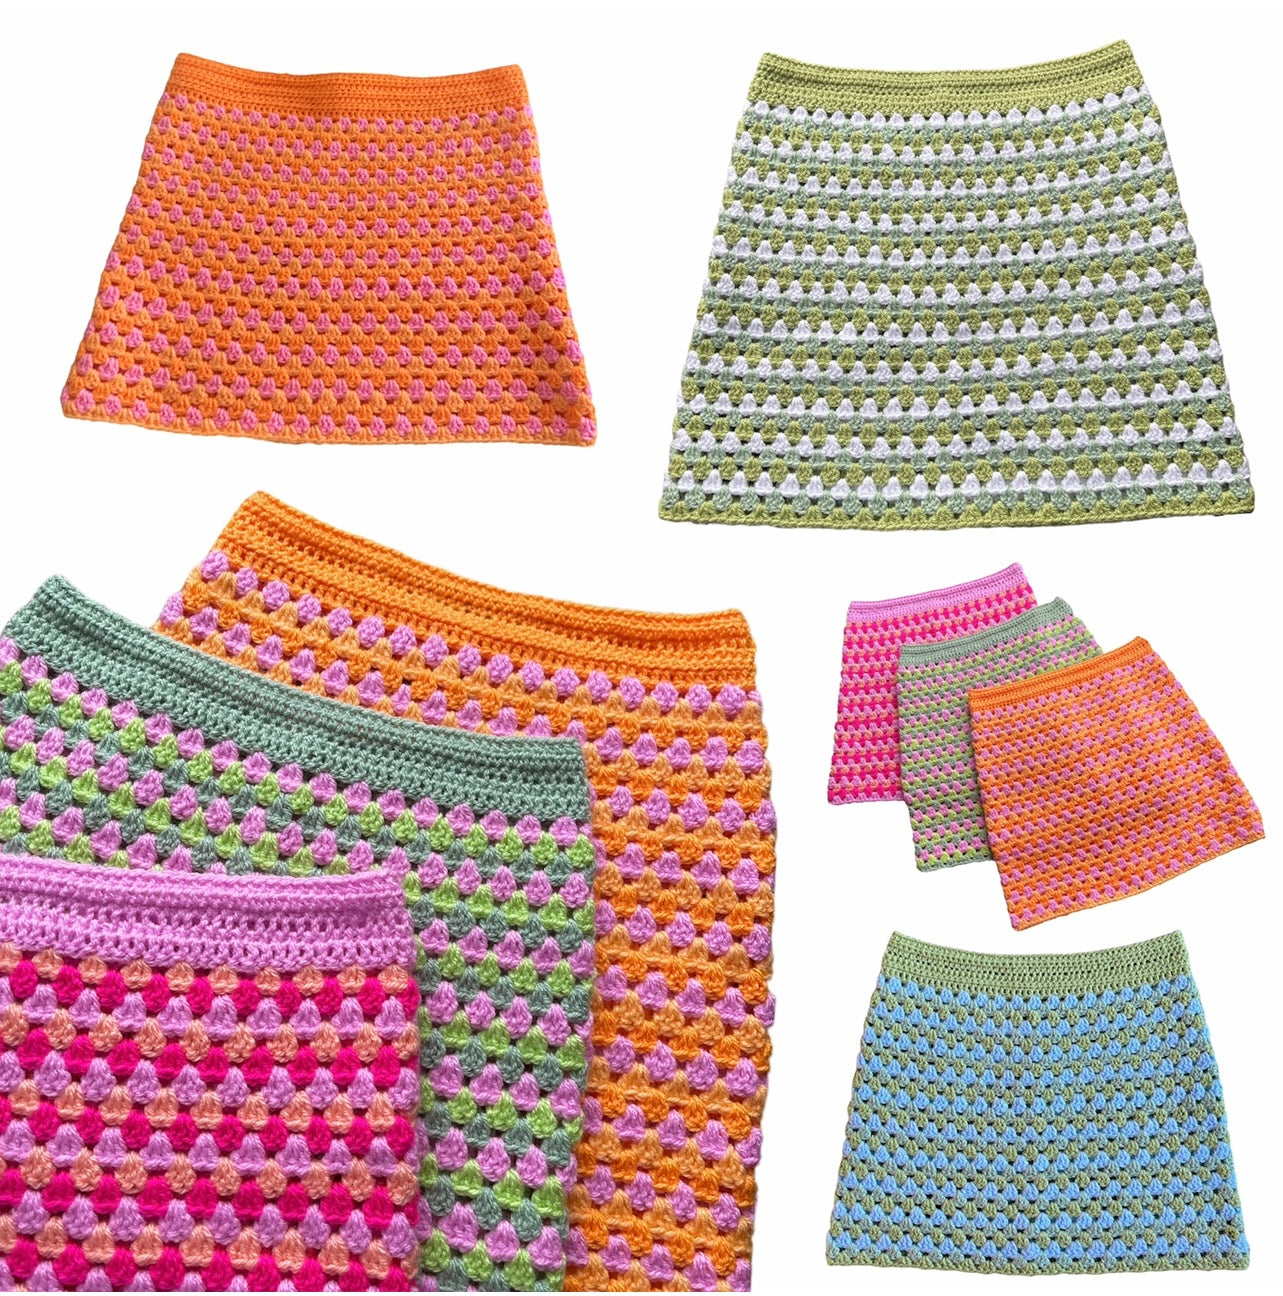 Handmade retro crochet mini skirt in pink and orange